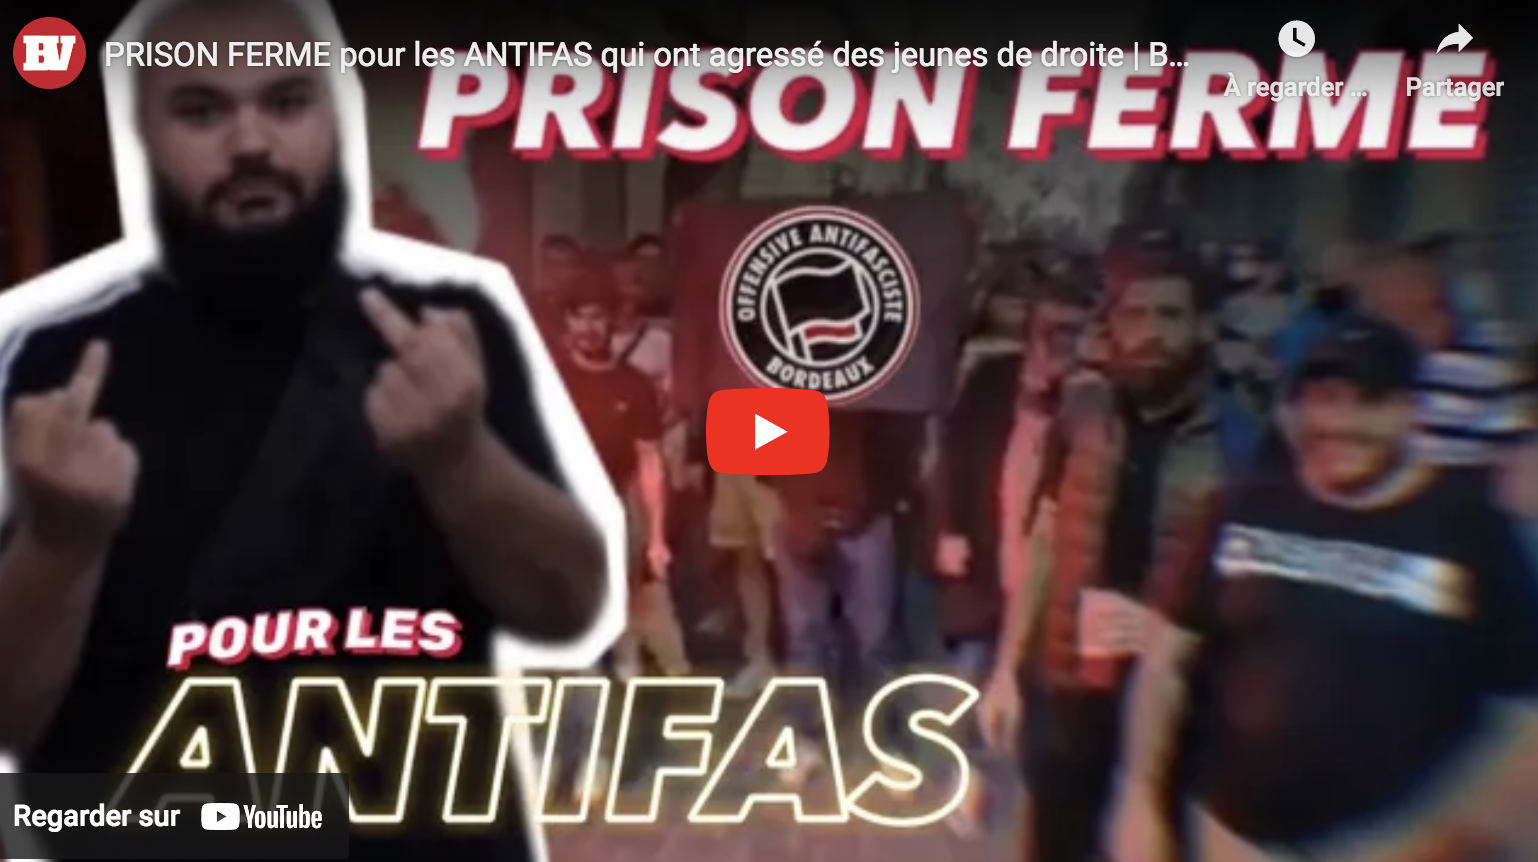 Prison ferme pour les antifas qui ont agressé des jeunes de droite (VIDÉO)